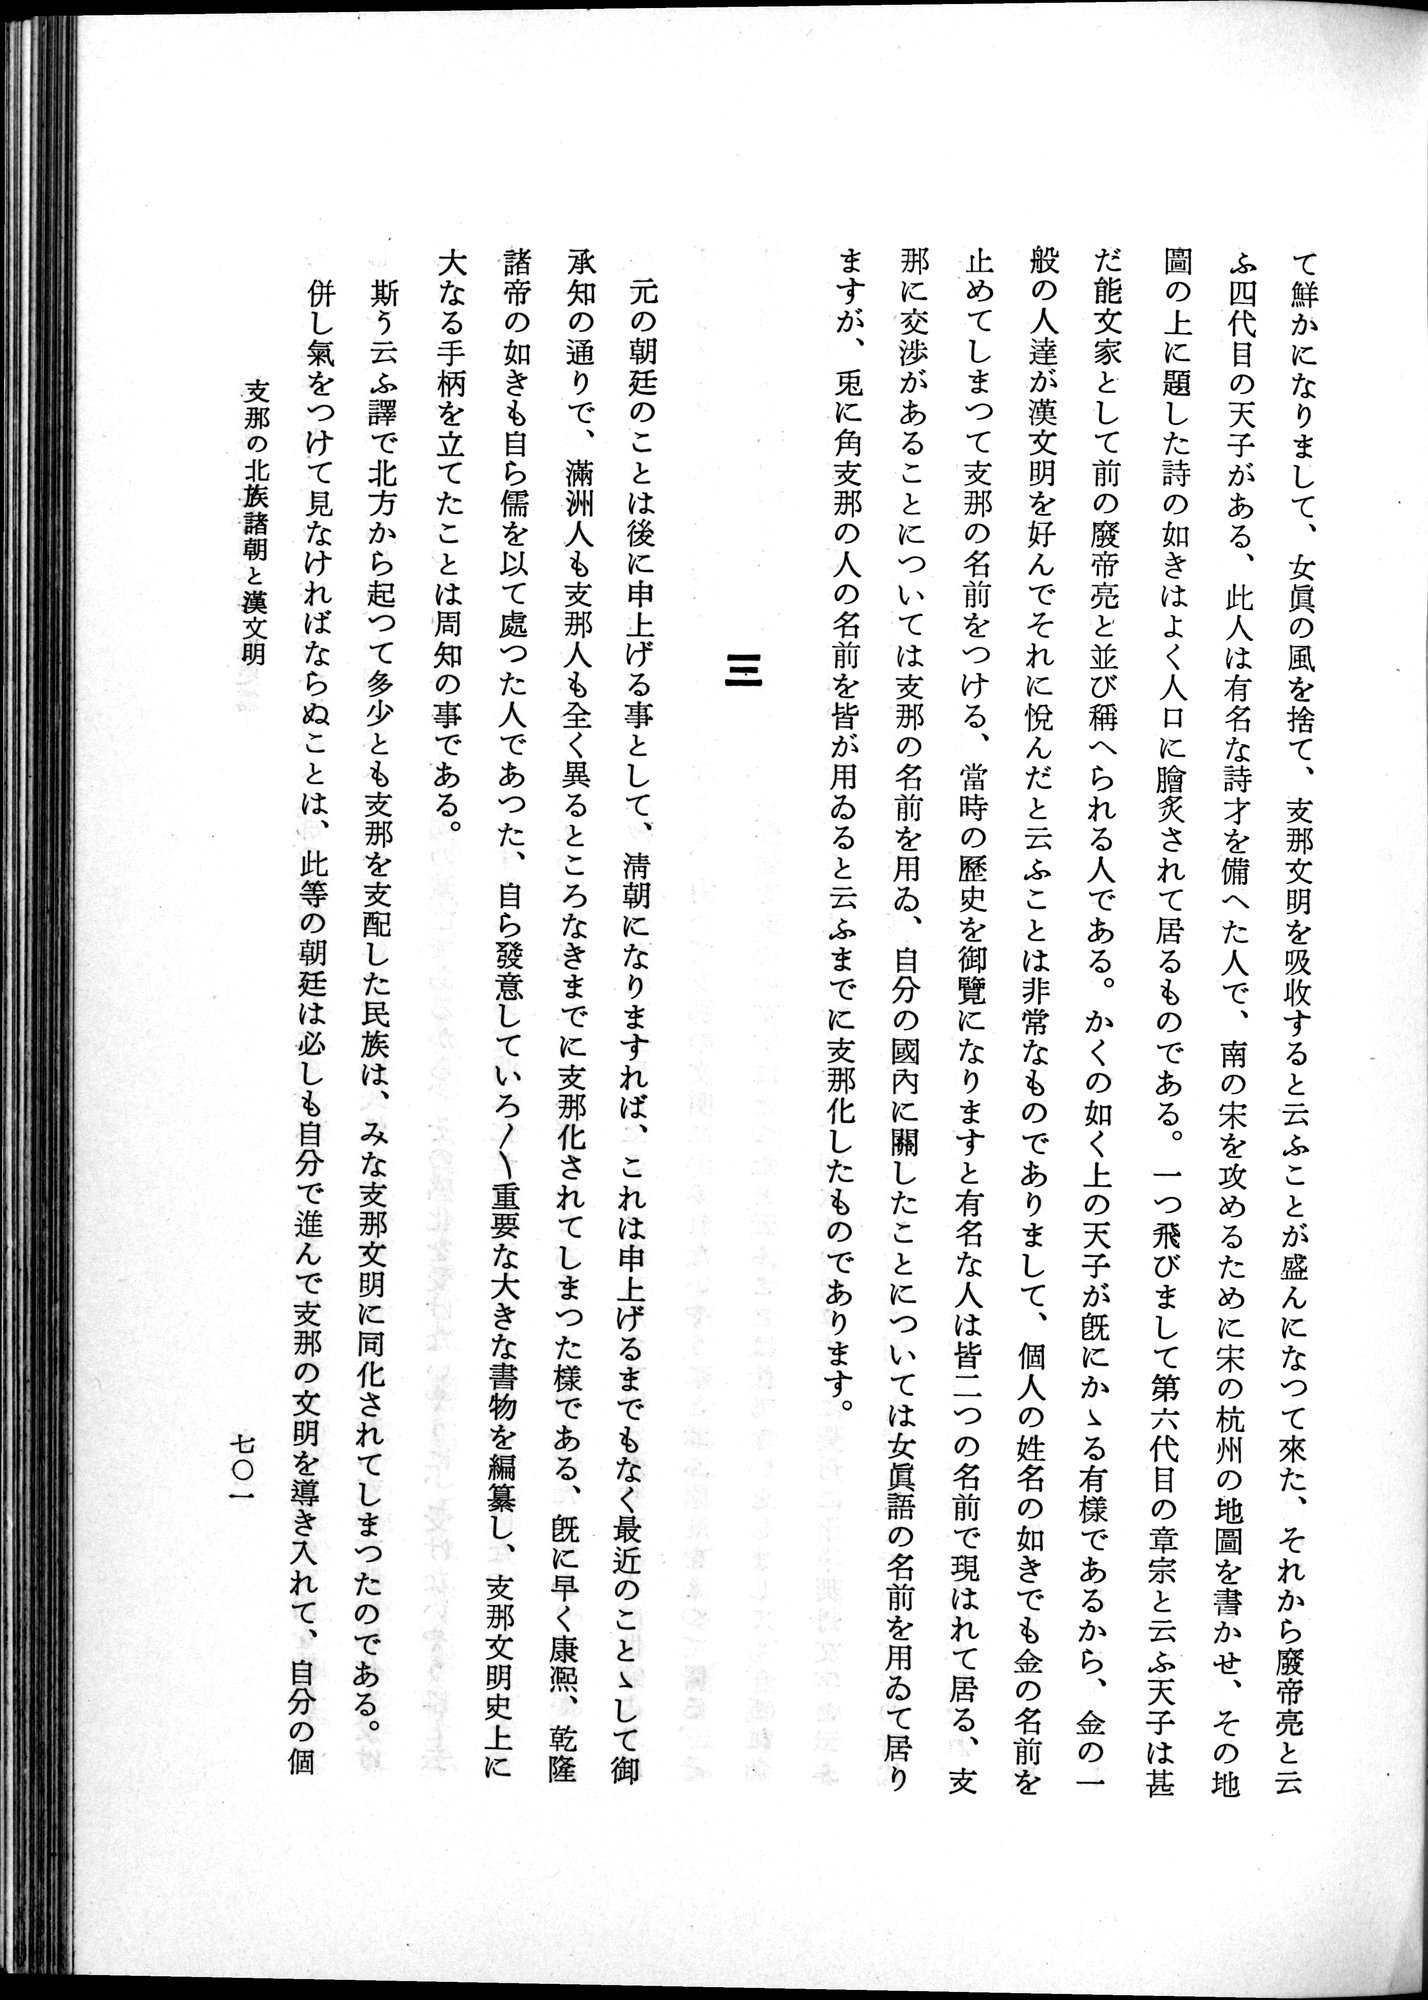 羽田博士史学論文集 : vol.1 / Page 739 (Grayscale High Resolution Image)